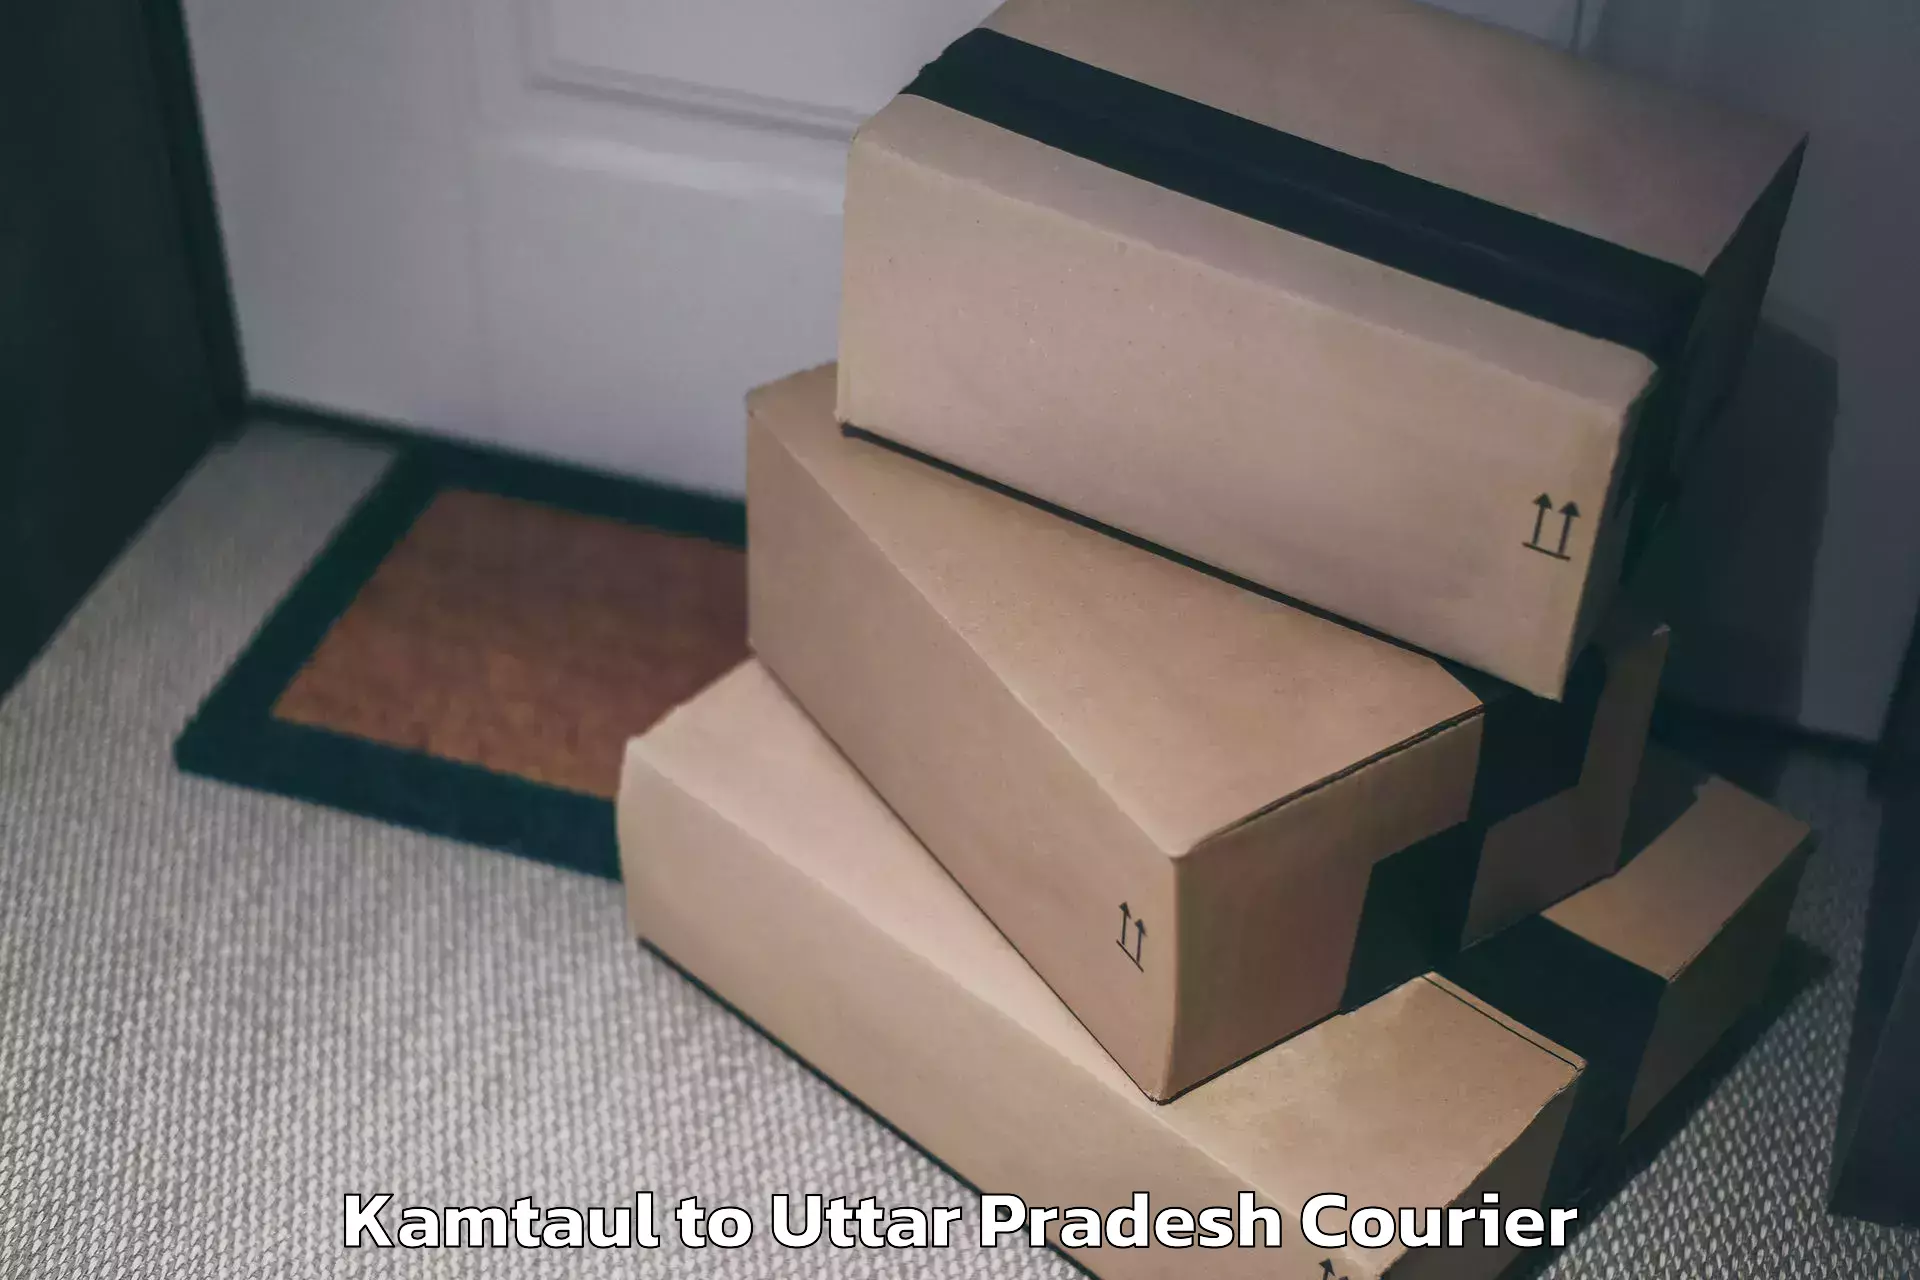 Holiday season luggage delivery Kamtaul to Amethi